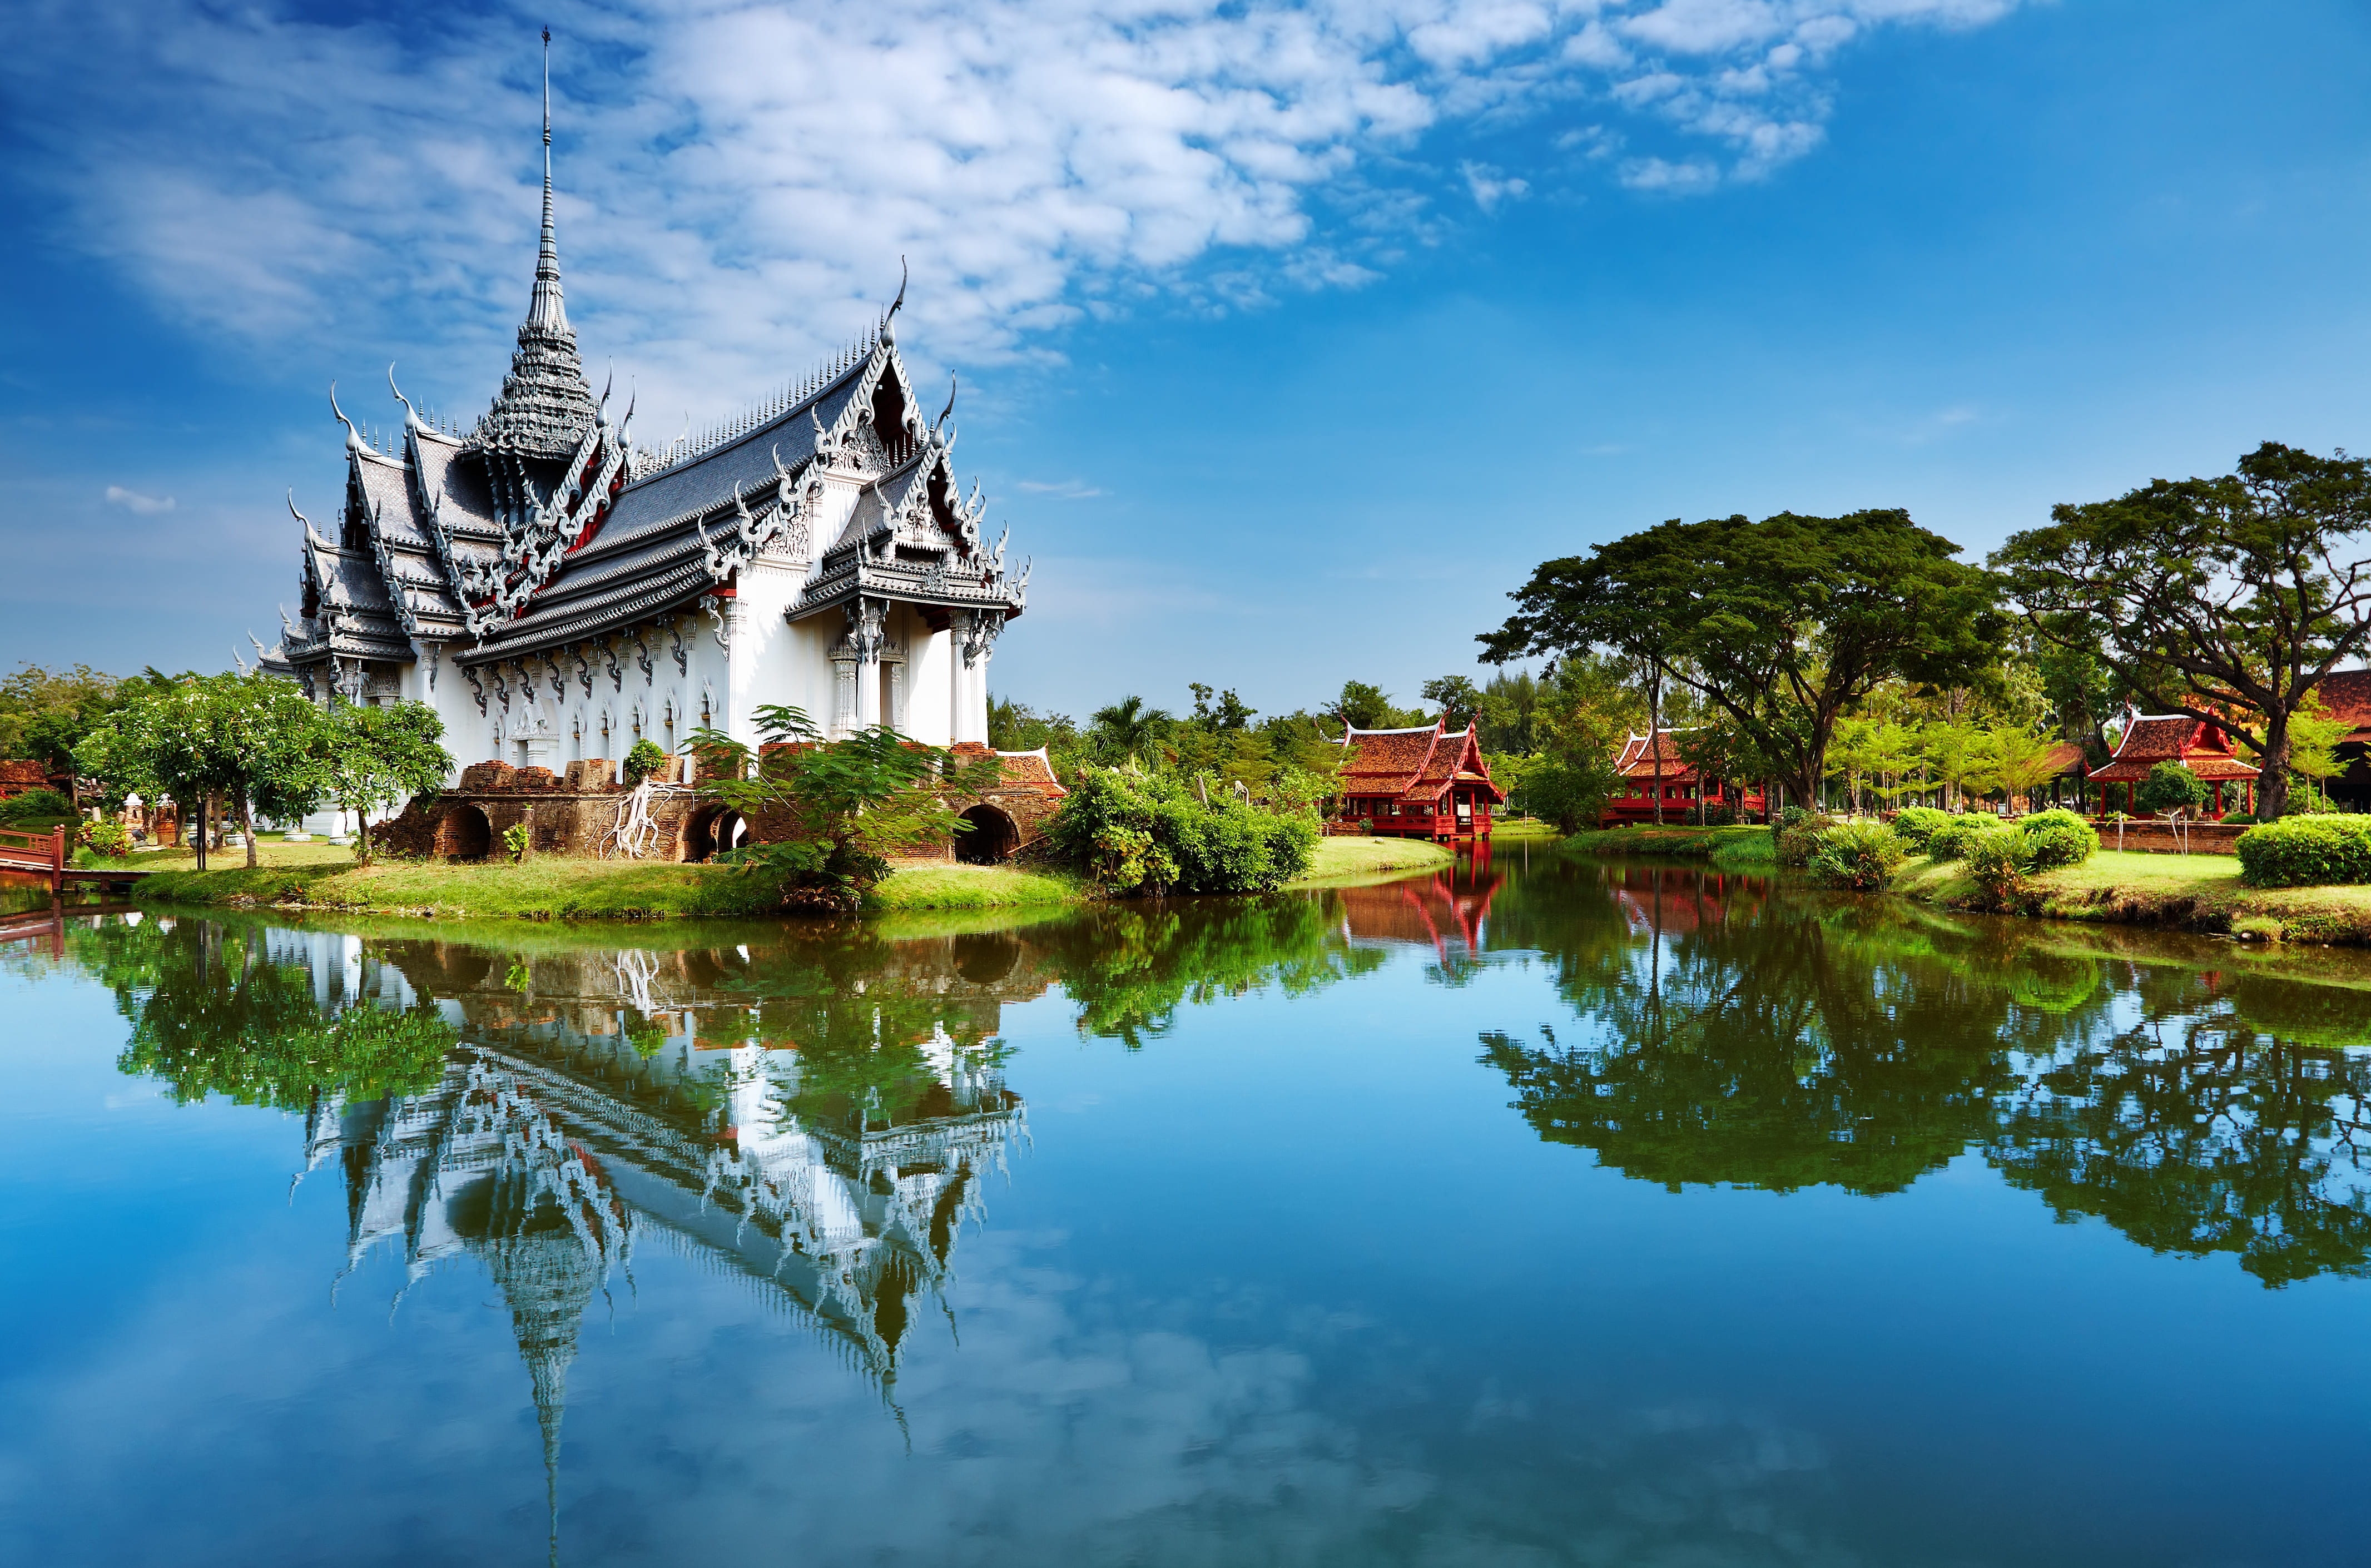 Kelionės Spalvingasis Tailandas ir egzotiškoji Kambodža aprašymas